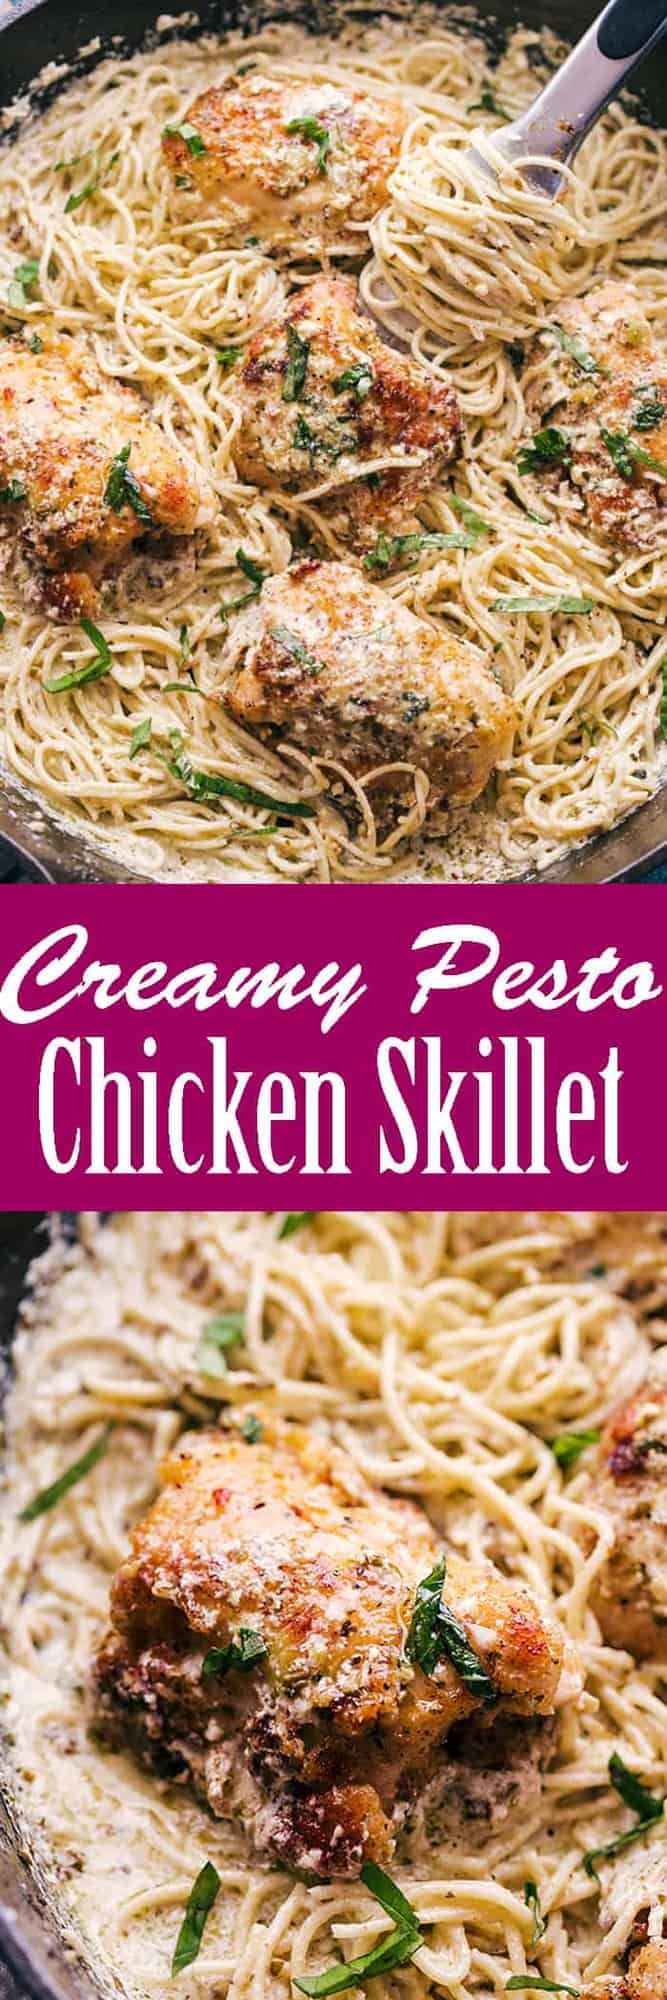 Creamy Pesto Chicken Skillet pinterest